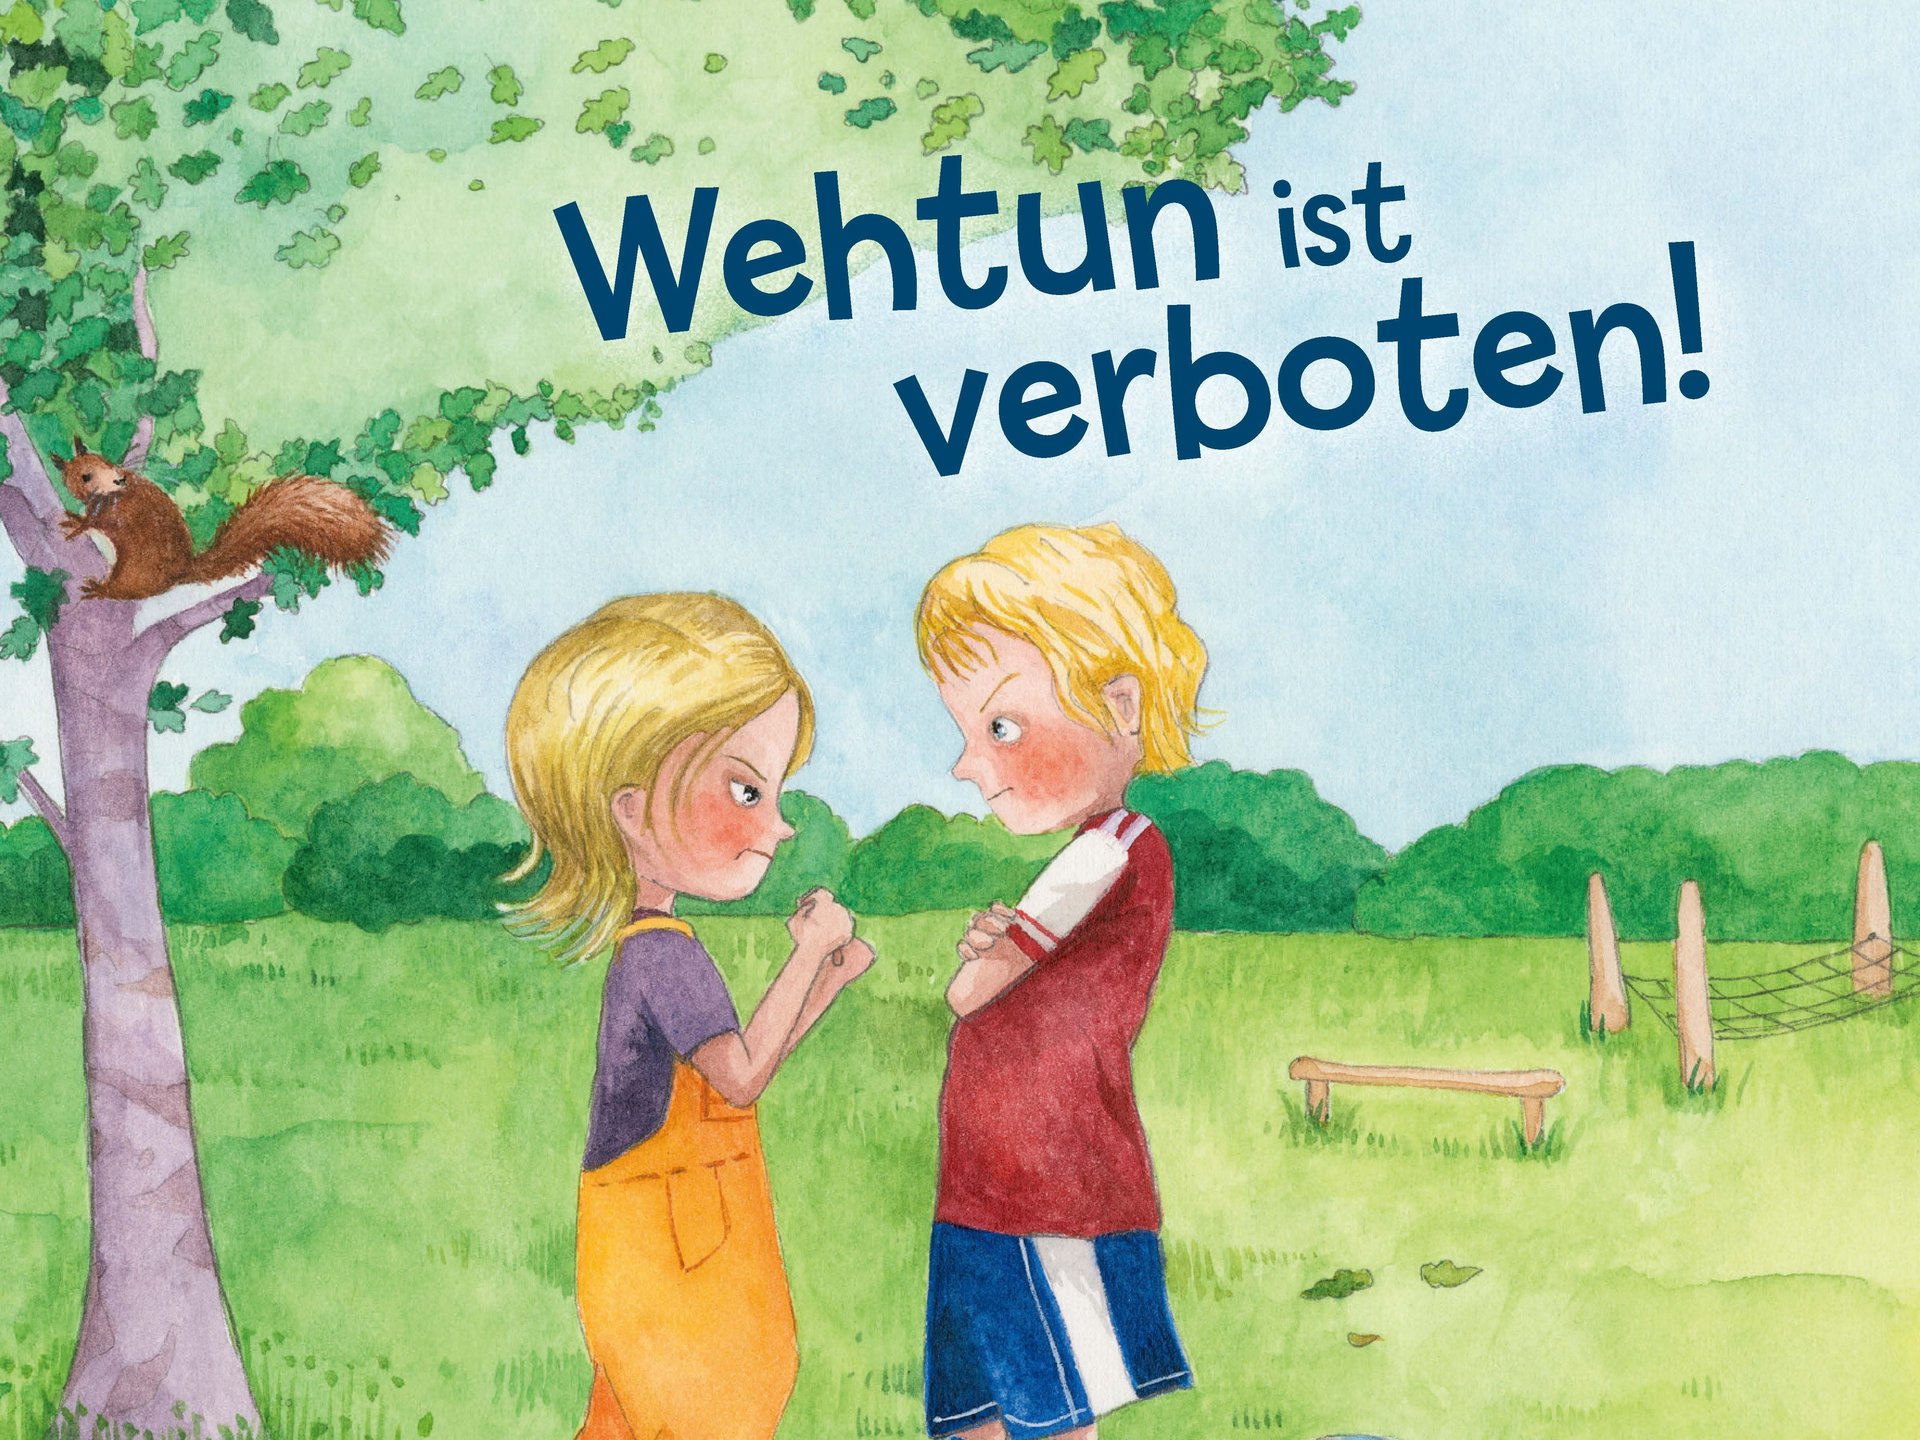 Cover des Pixibuchs: Zwei Kinder stehen einander in einer grünen Landschaft gegenüber und schauen einander böse an. Das Mädchen ballt die Fäuste, der Junge hält die Arme verschränkt. 